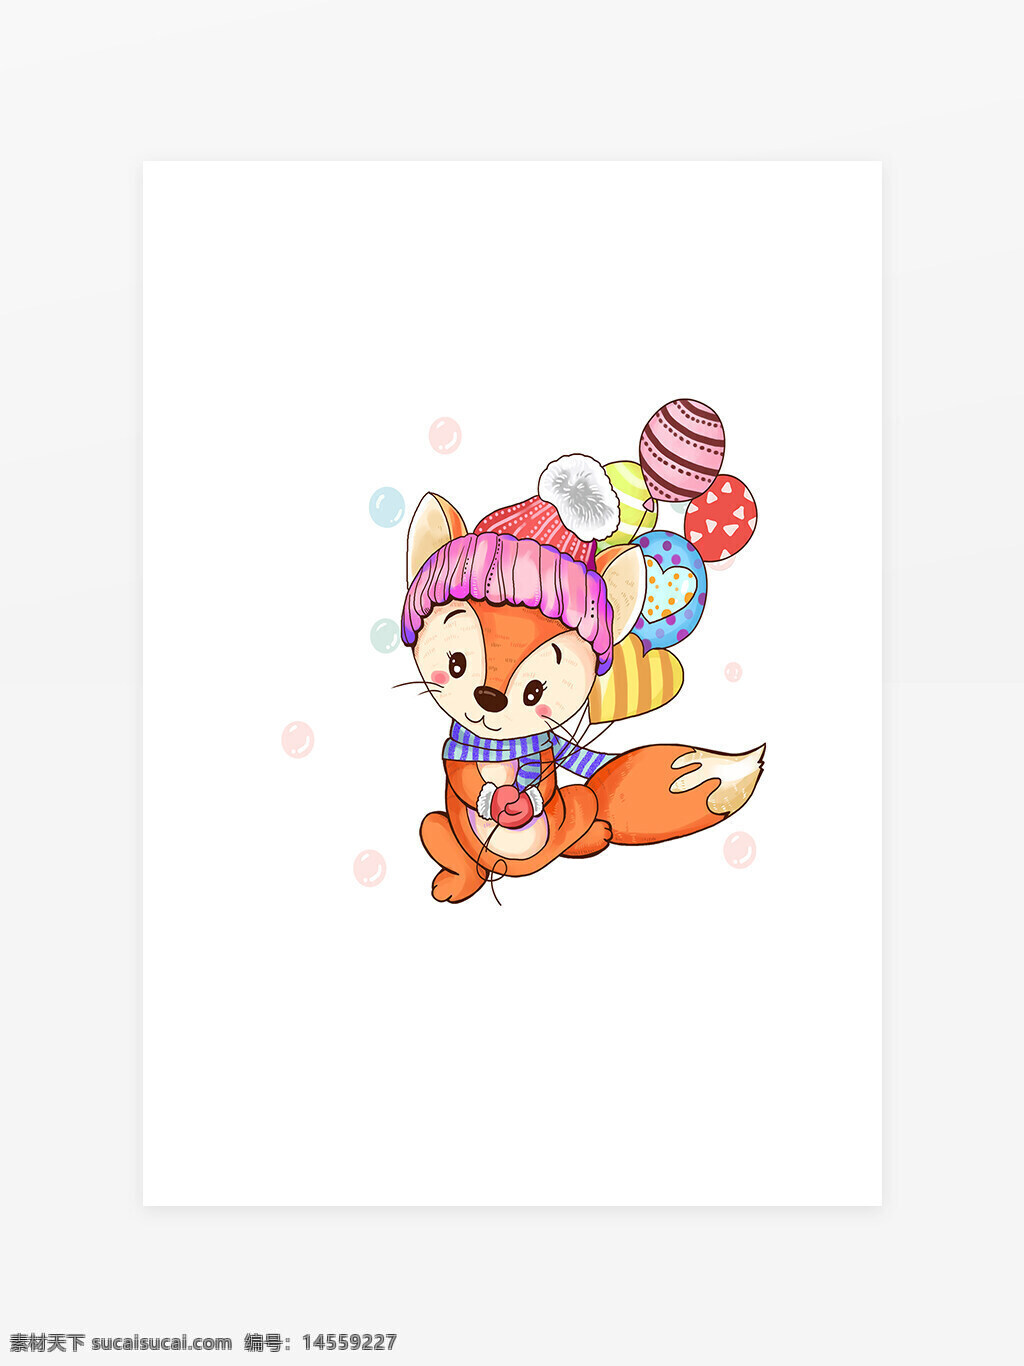 可爱的气球狐狸 可爱的狐狸 气球狐狸 狐狸 卡通气球 卡通狐狸